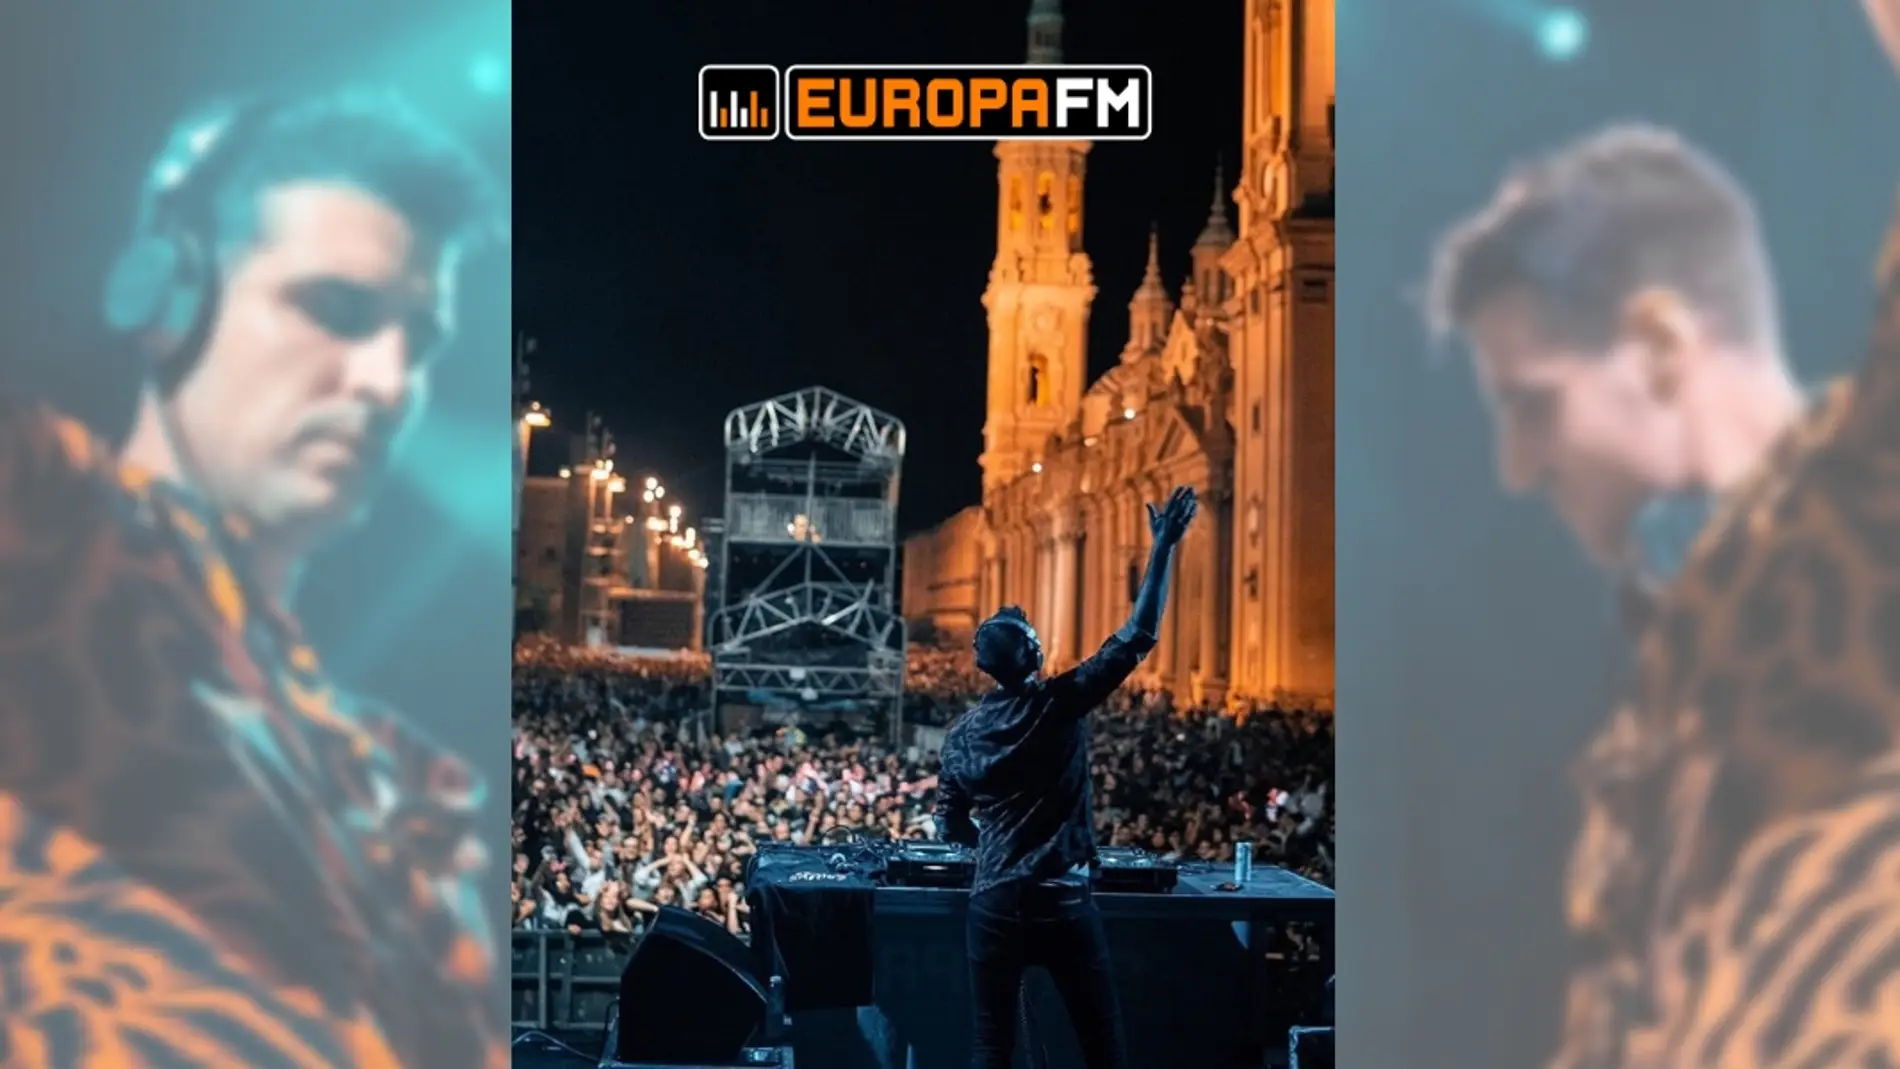 Uri Sabat en el escenario Europa FM en las Fiestas del Pilar title=